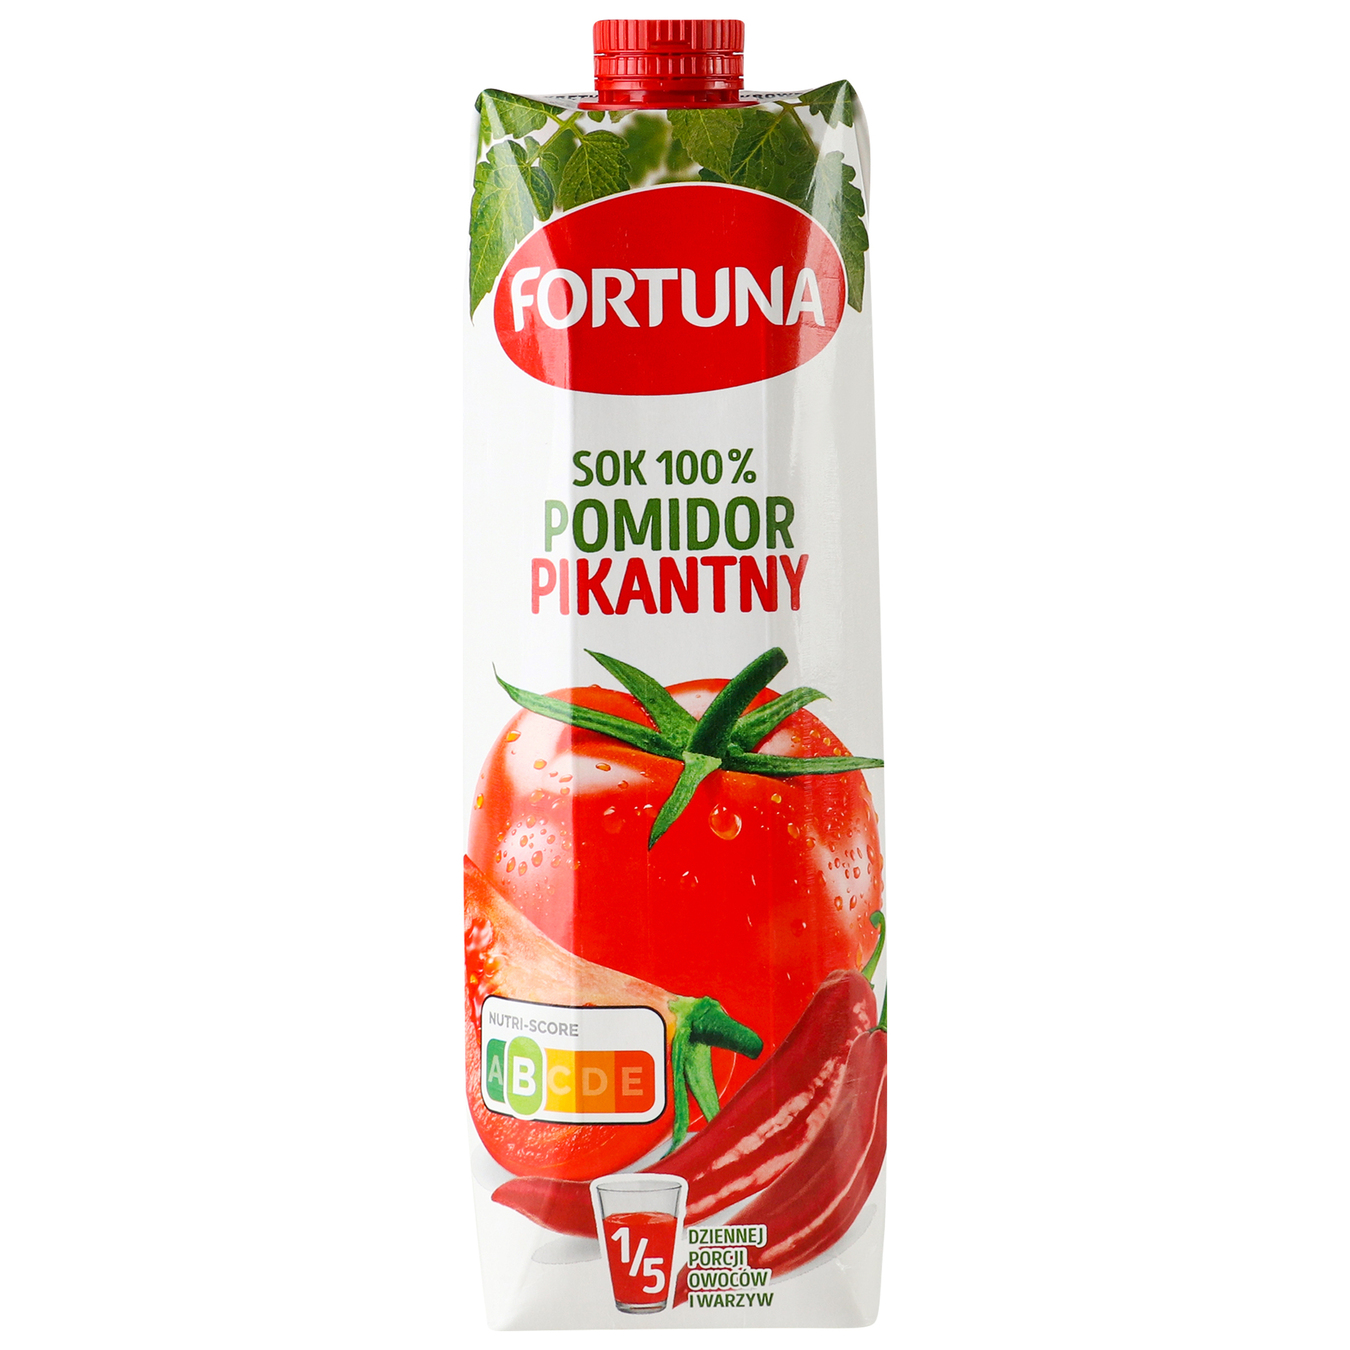 Fortuna spicy tomato juice 1 l